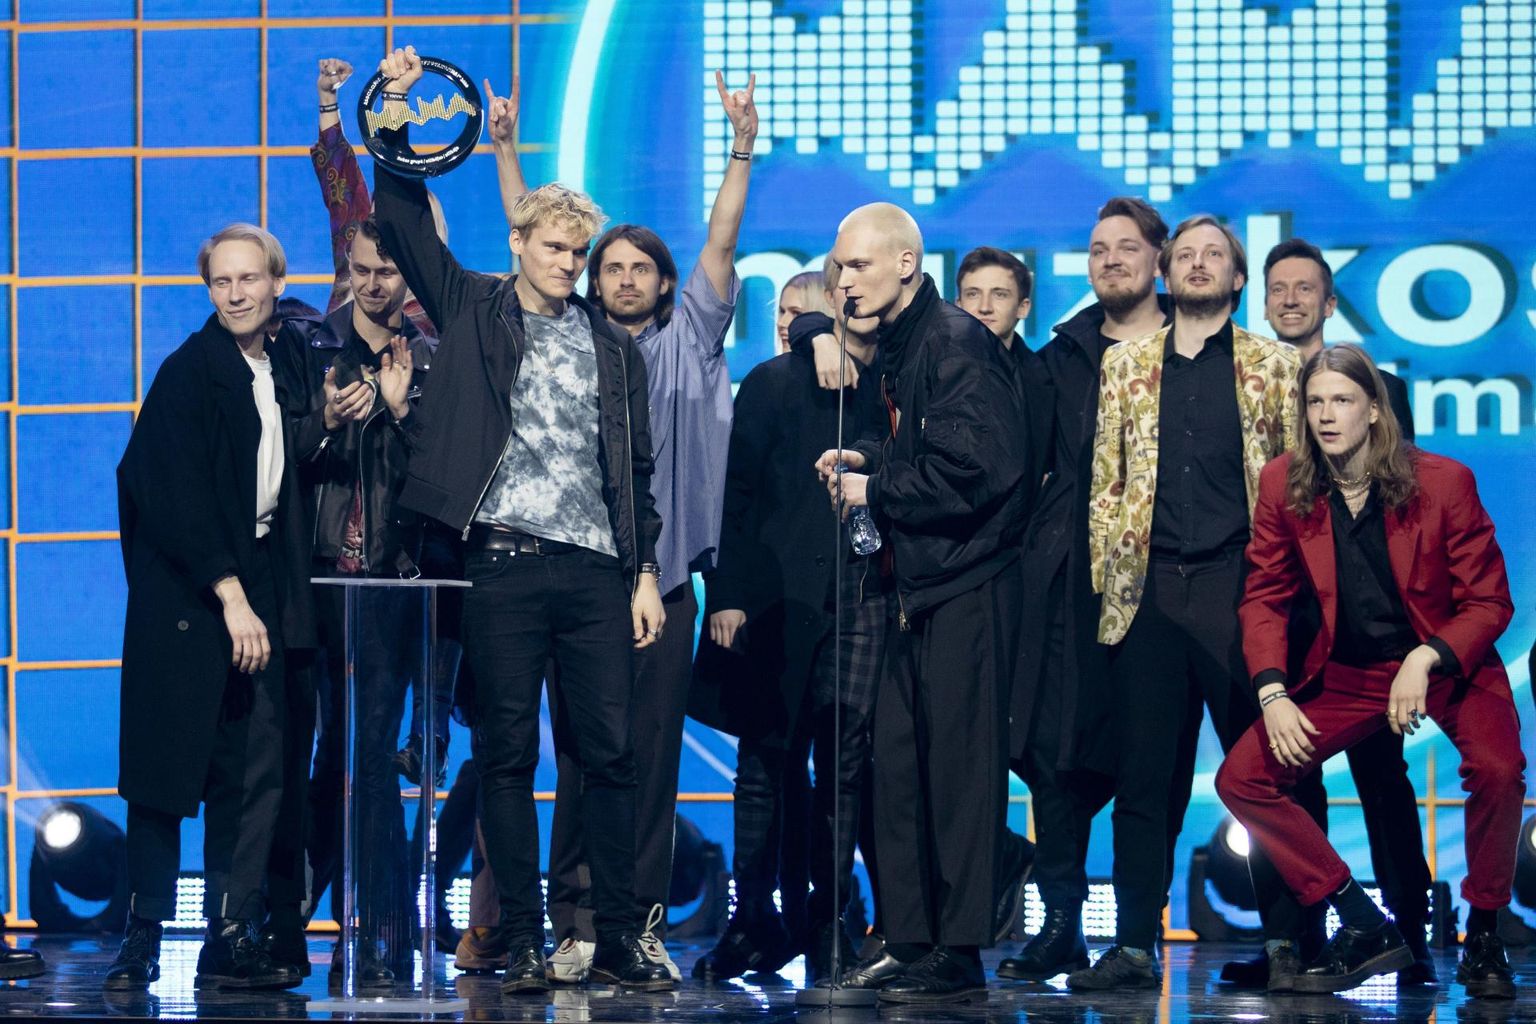 Leedu muusikaauhindade gala korraldati telesaate salvestuse kattevarjus. Koroonareeglite eiramine tõi kaasa suure skandaali. 